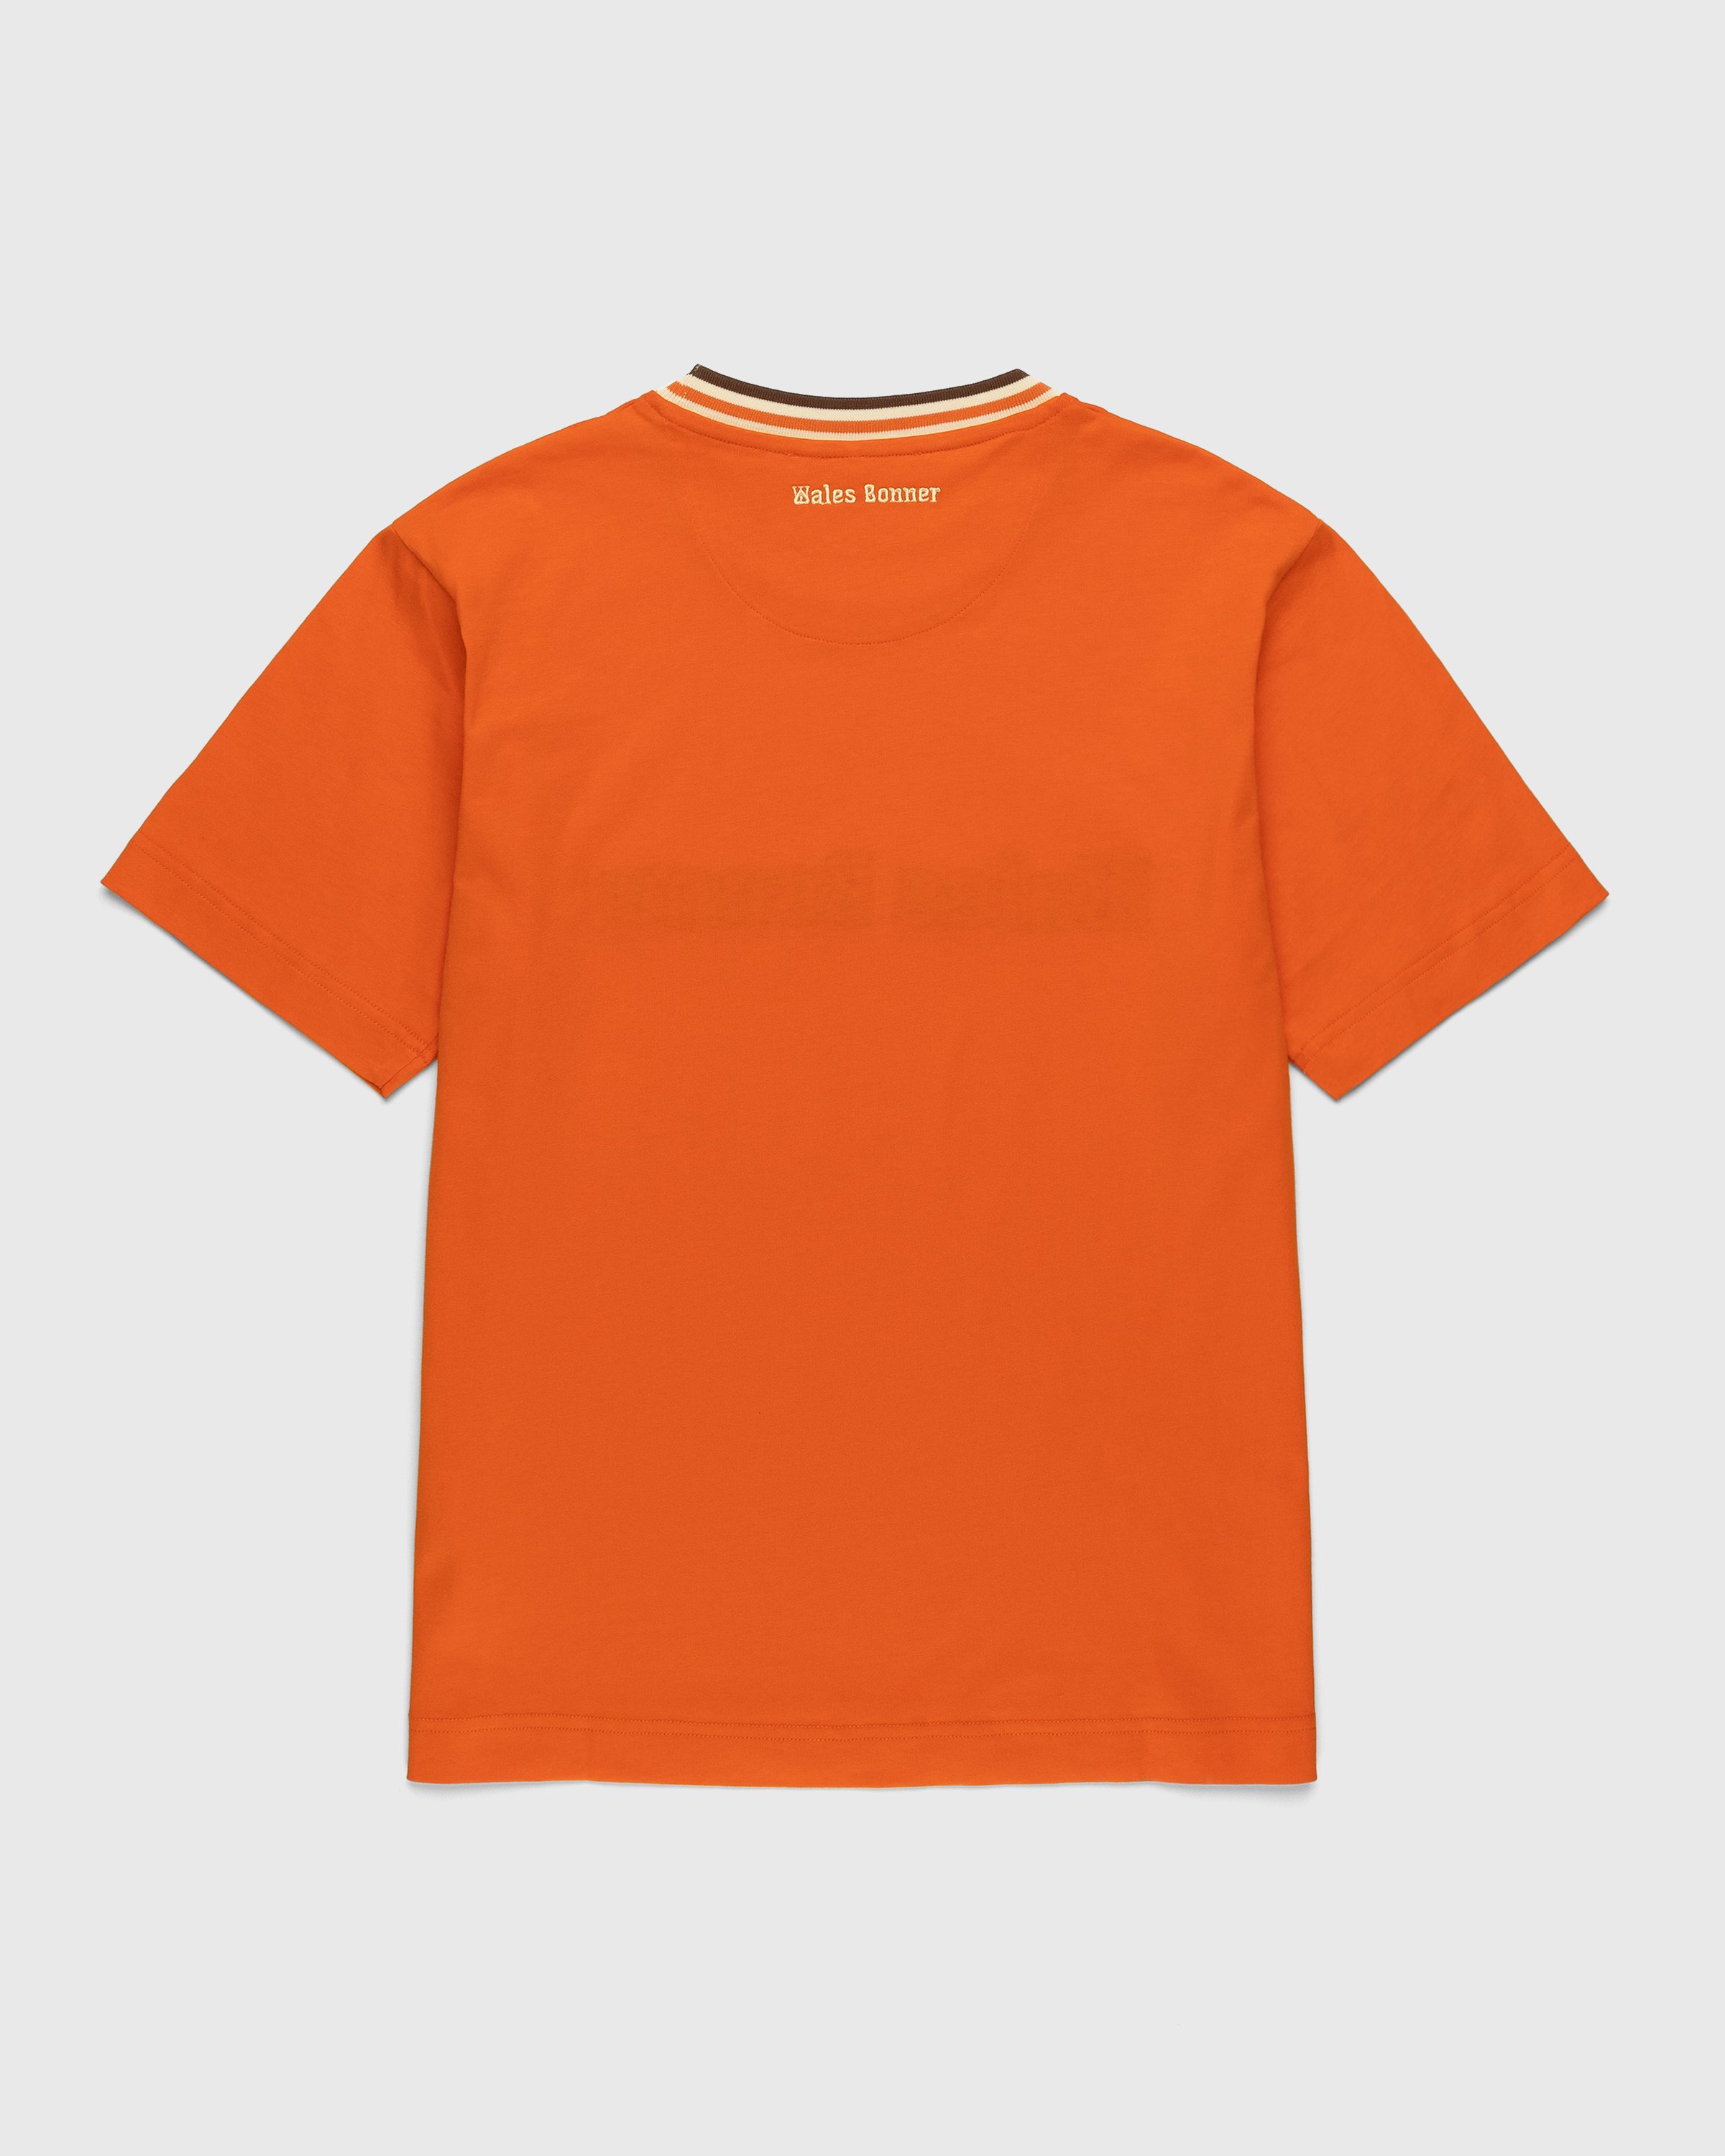 Wales Bonner - Original T-Shirt Orange - Clothing - Orange - Image 2